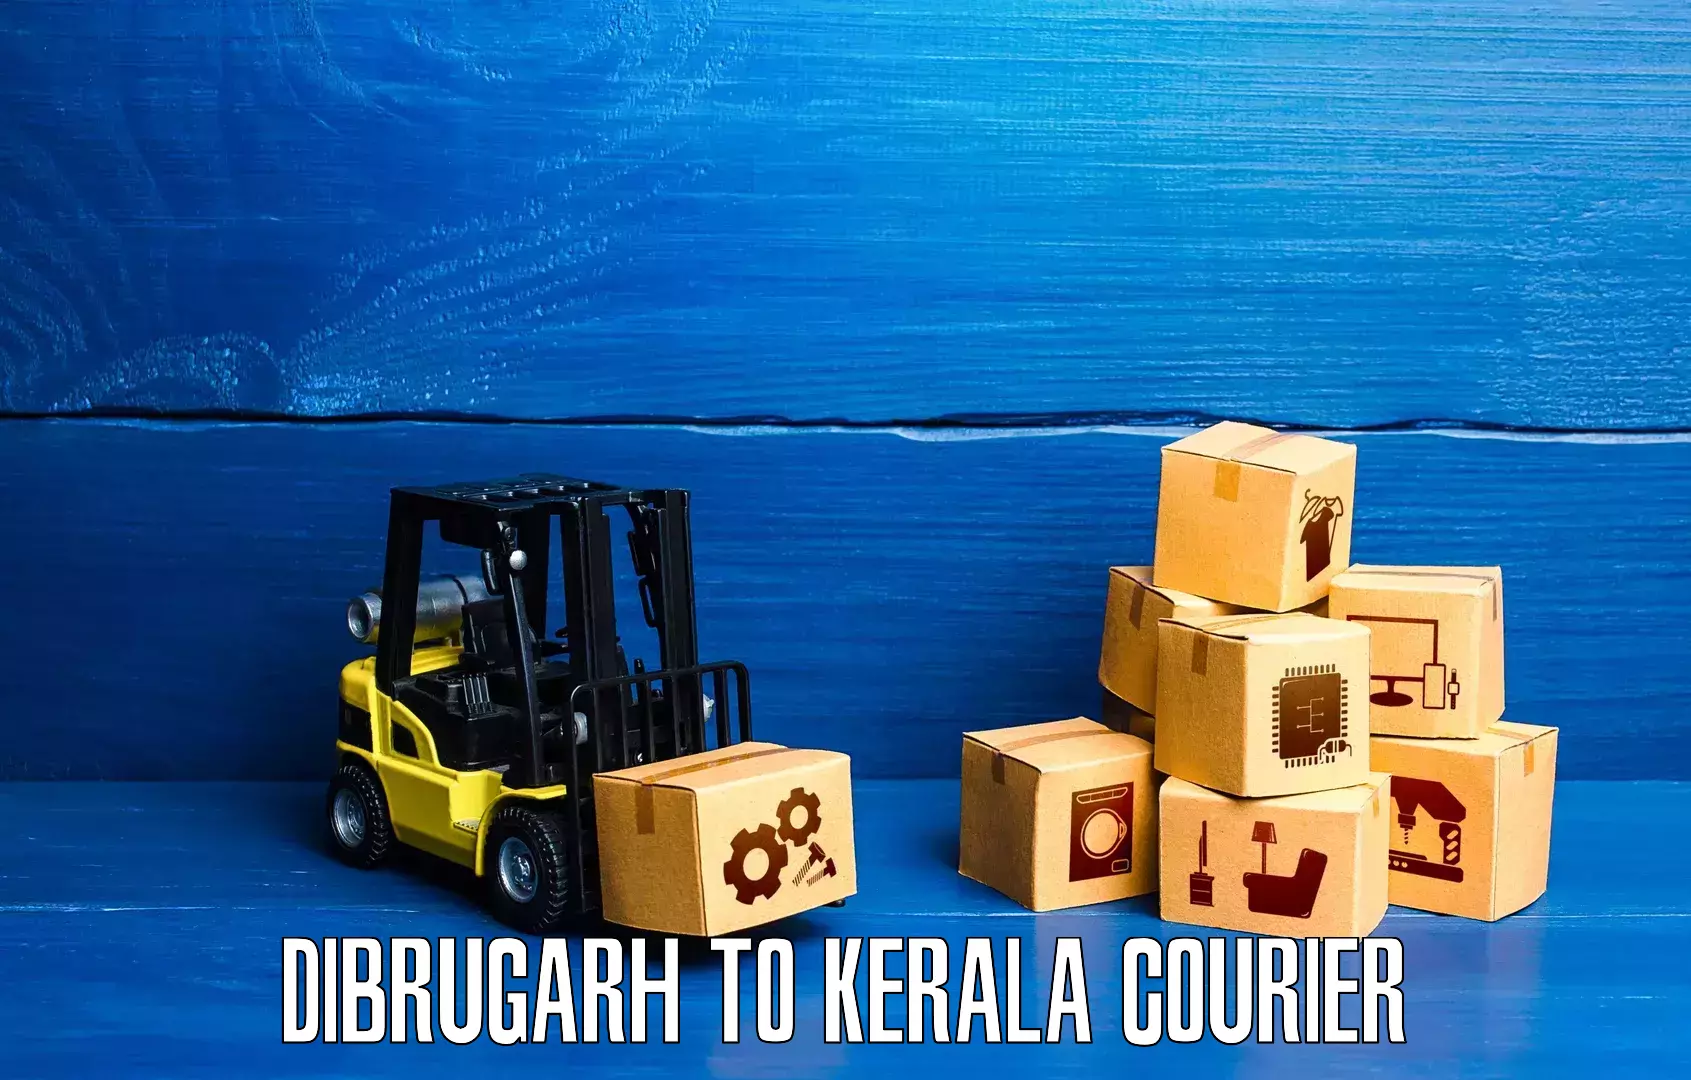 Nationwide parcel services Dibrugarh to Thiruvananthapuram